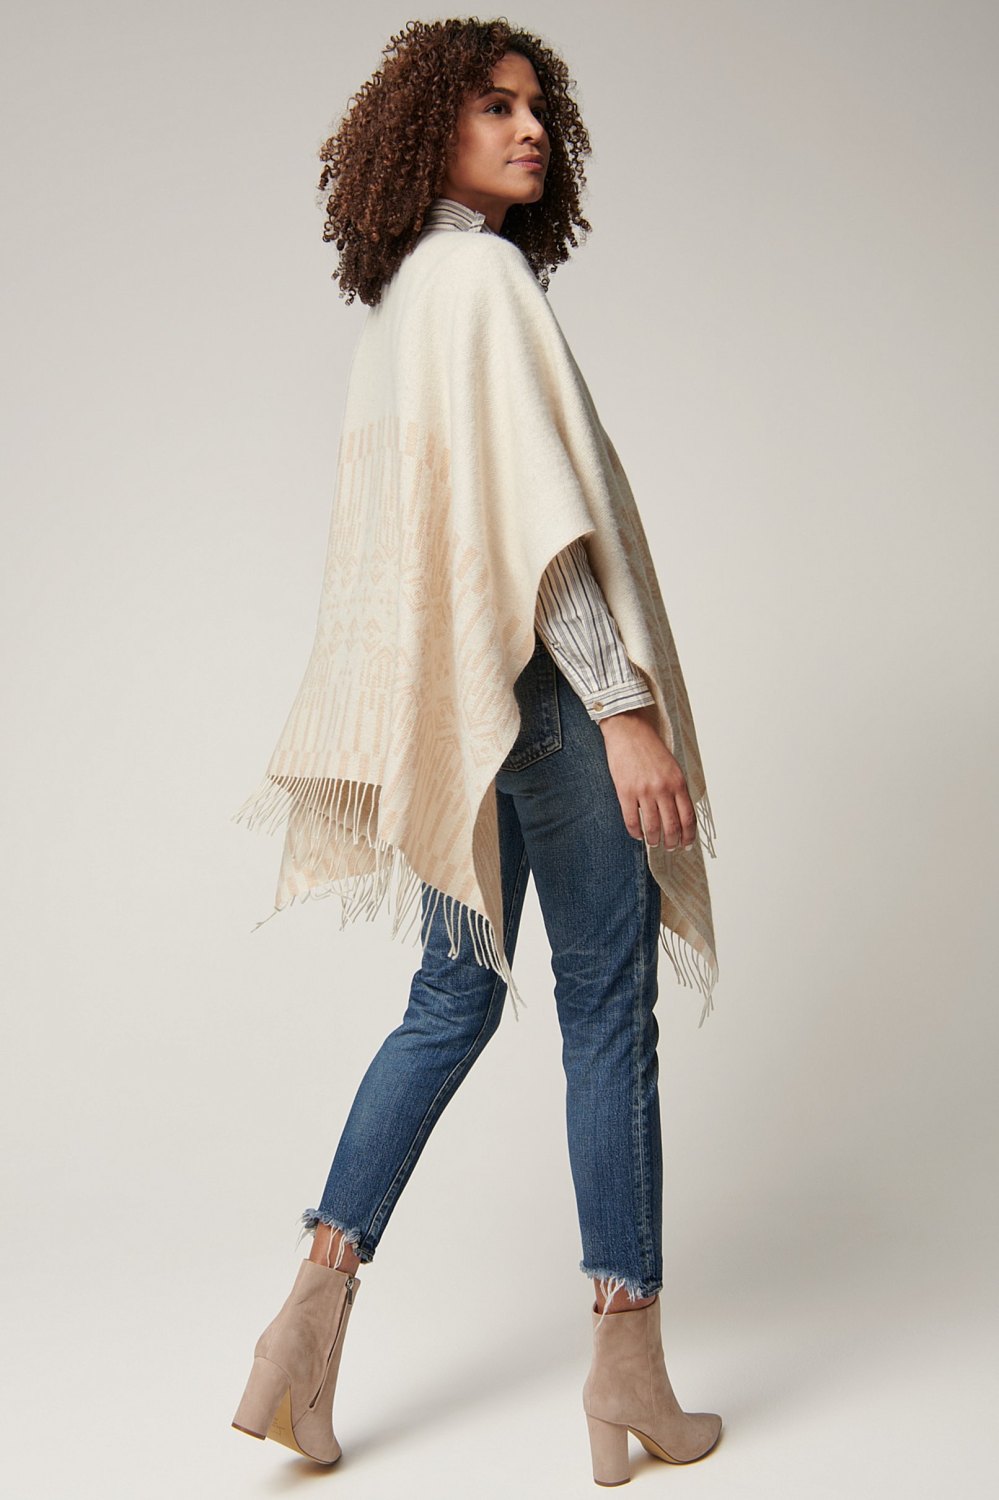 Overland Nina Alpaca wool shawl